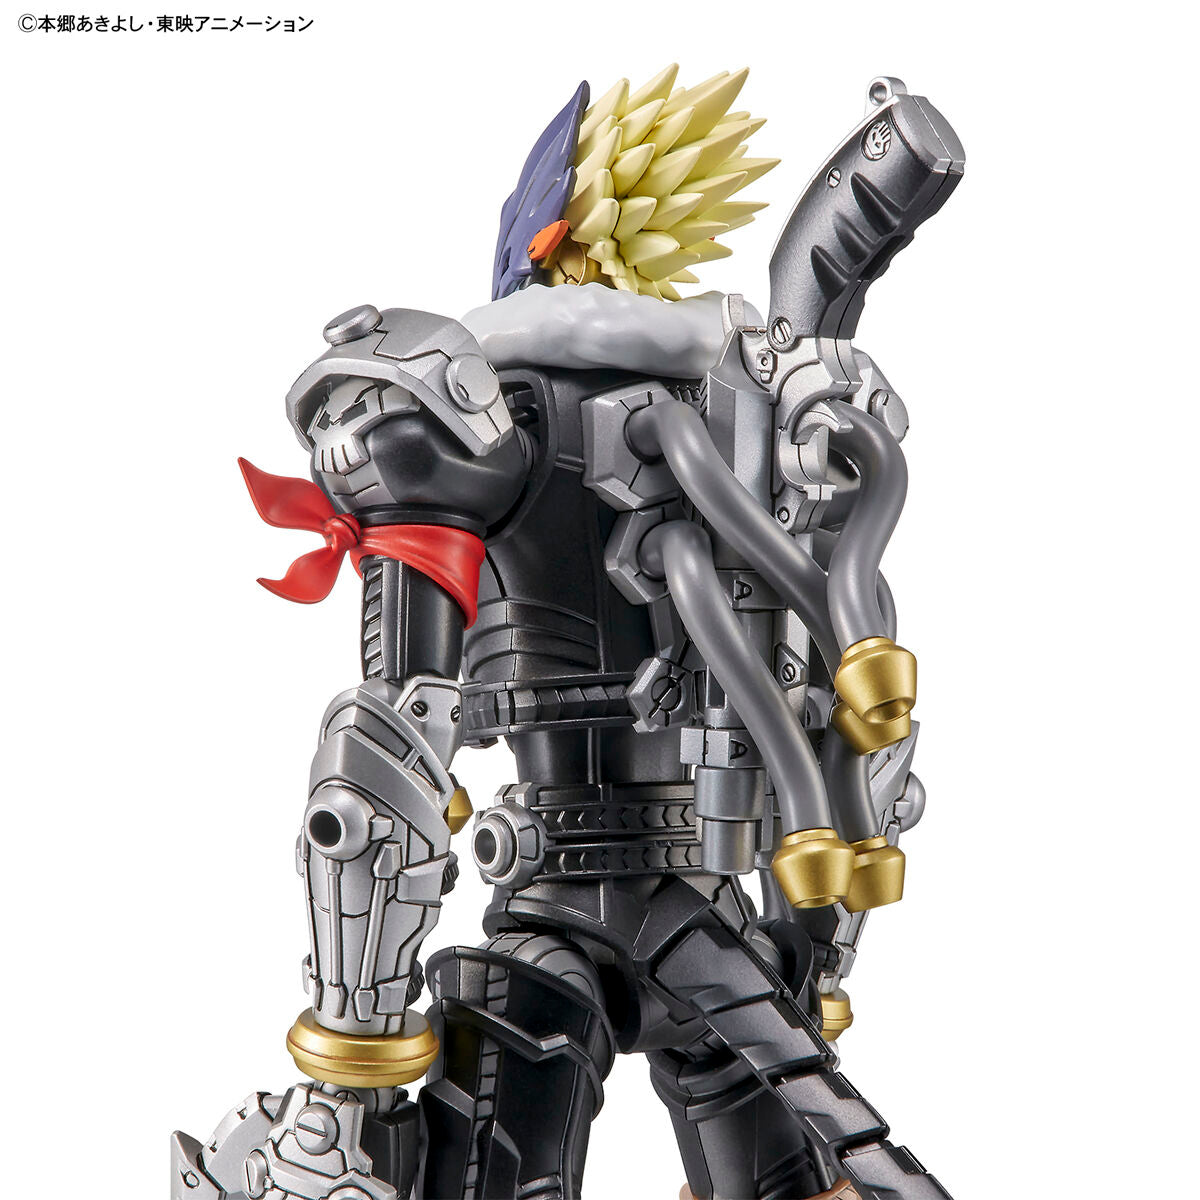 Digimon – Figure-rise Standard – Verstärkter Beelzemon